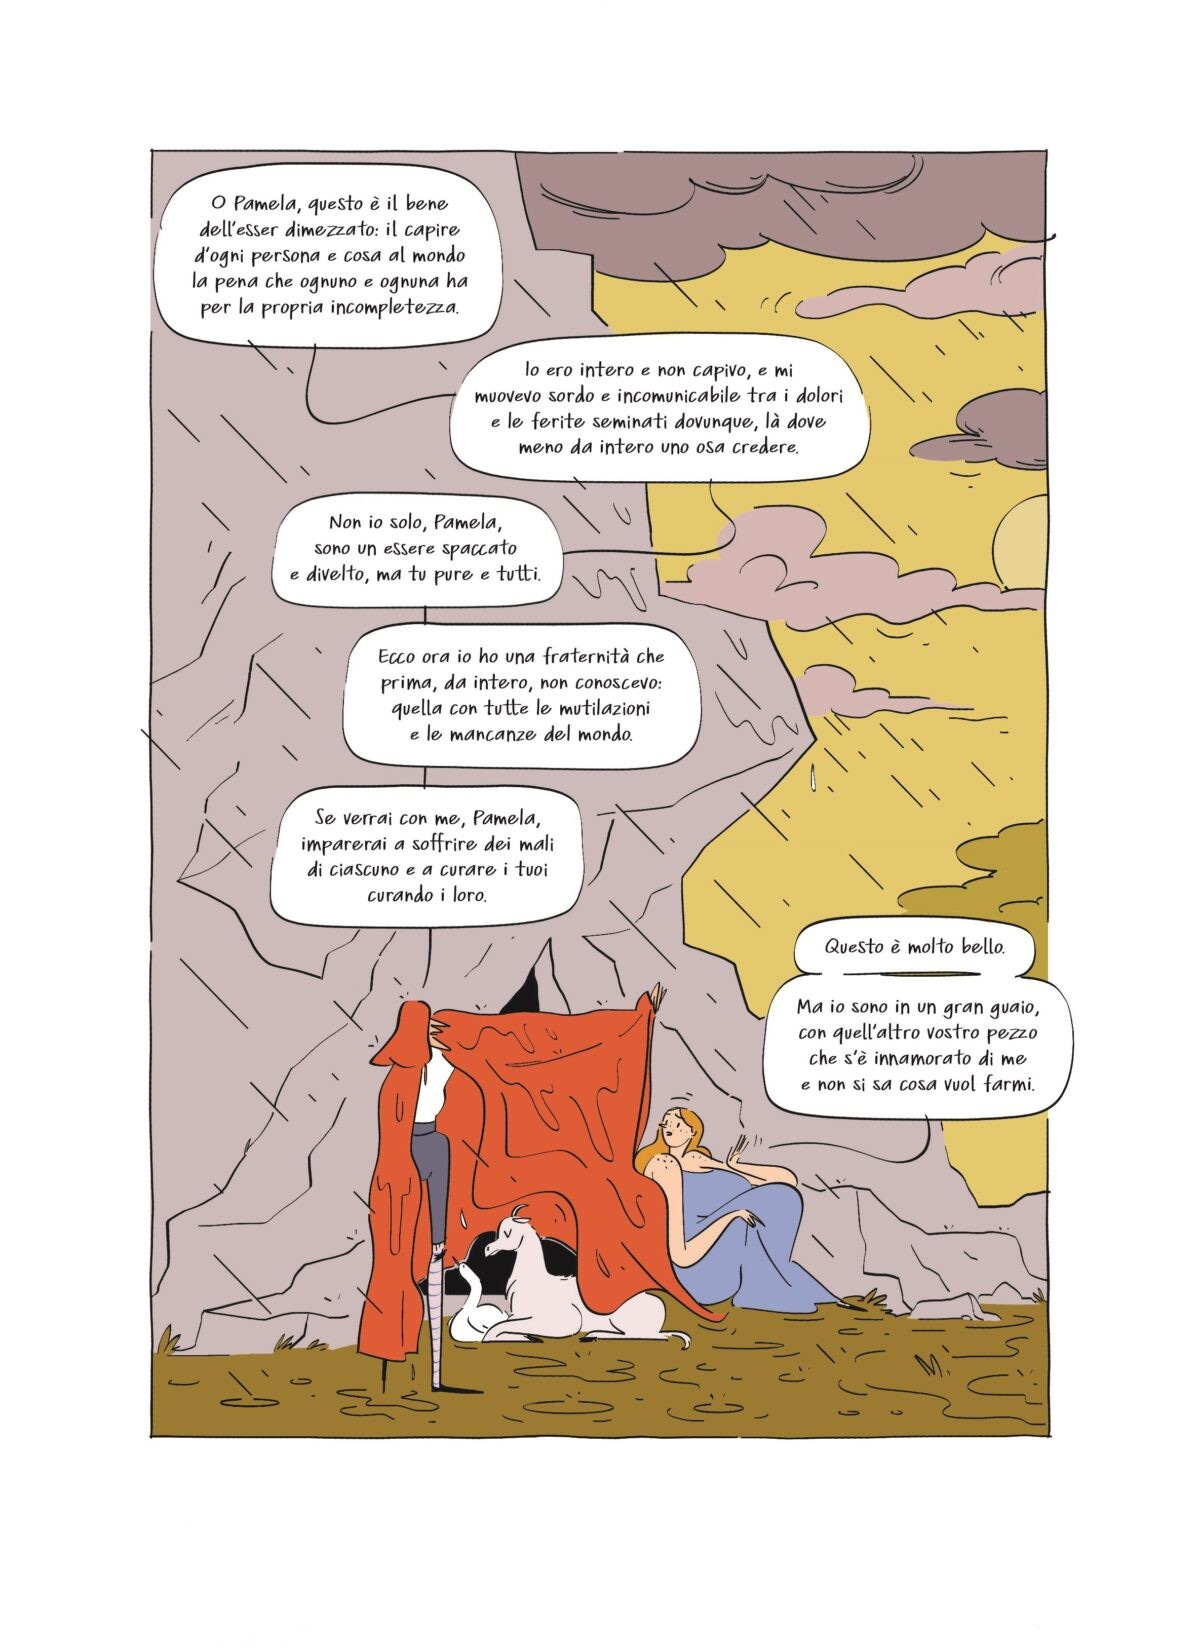 pagina interna de il visconte dimezzato adattamento a fumetti di lorenza natarella del romanzo di italo calvino